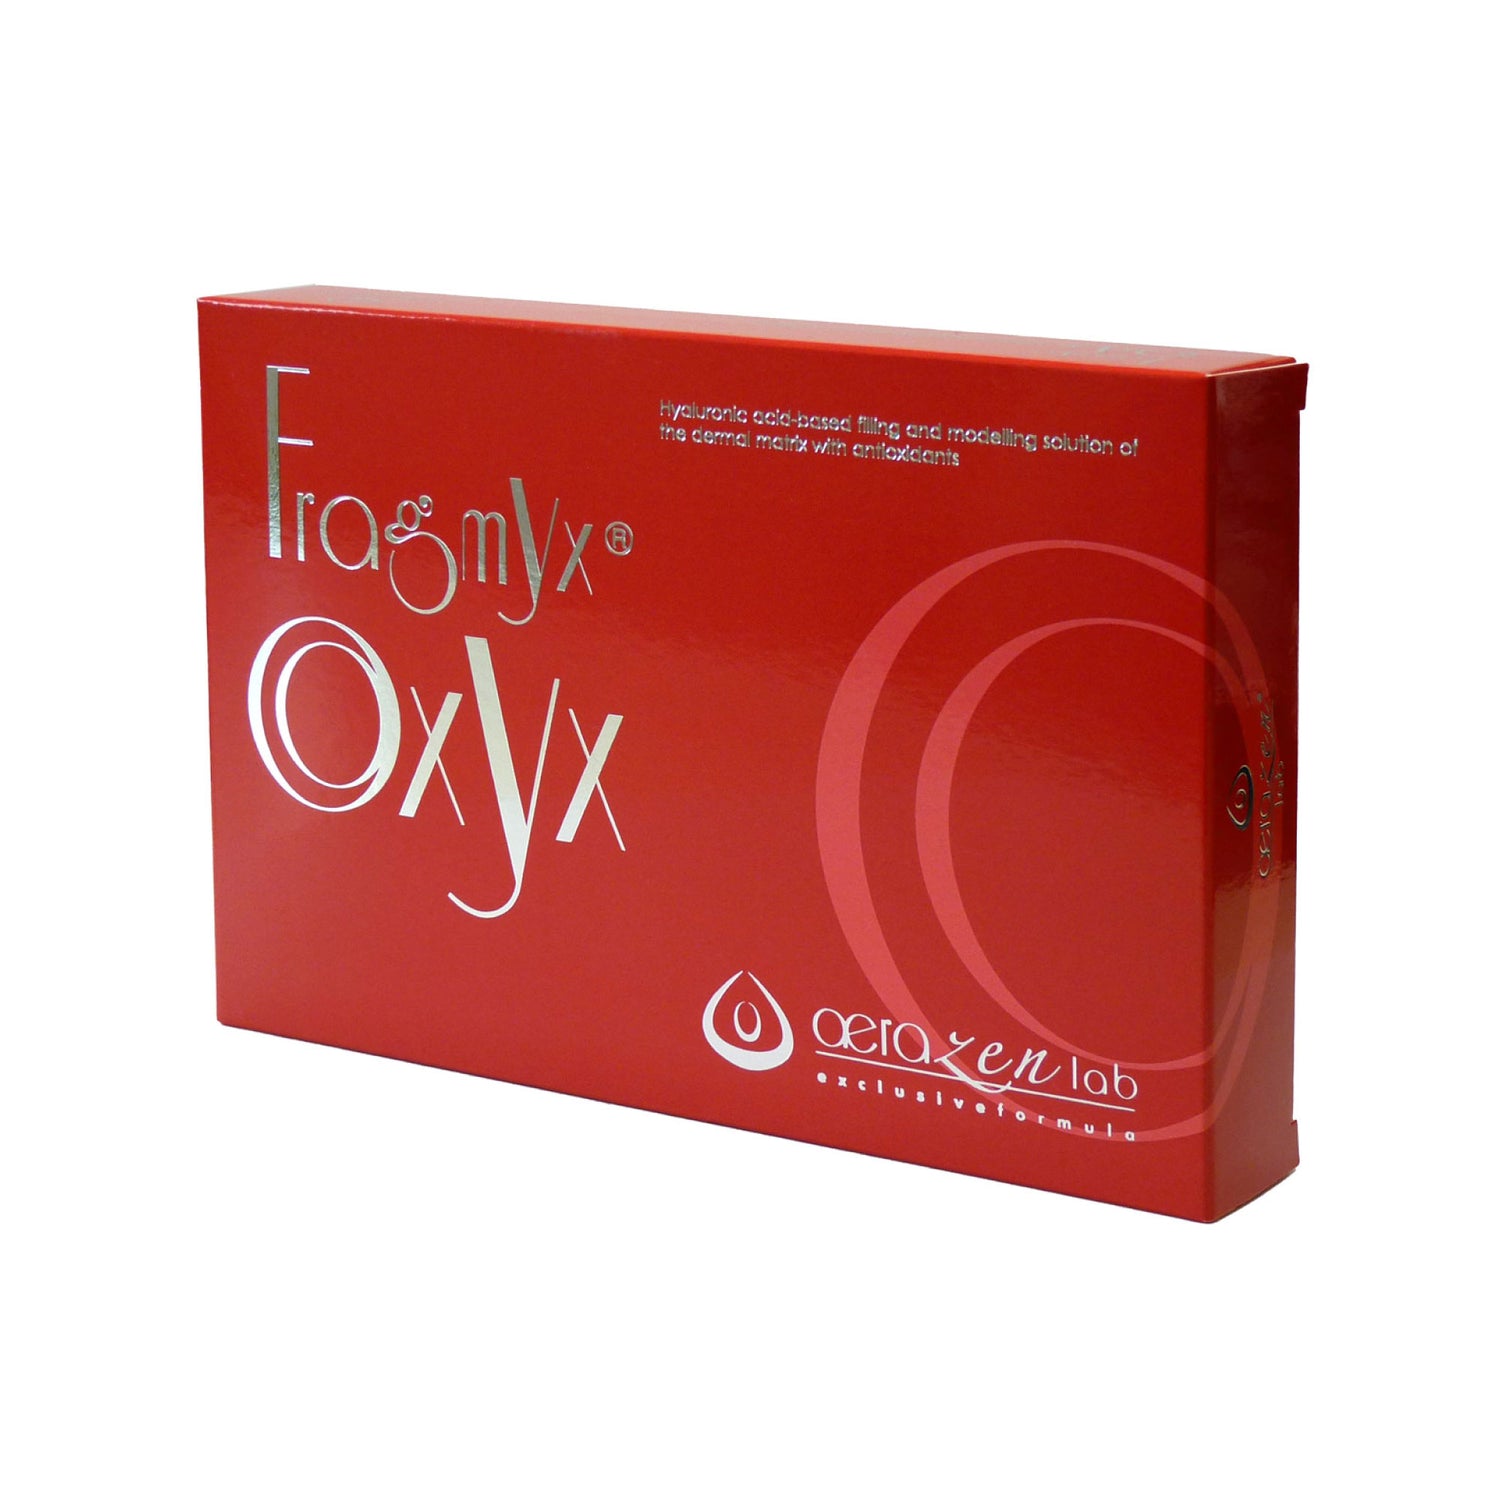 FRAGMYX OXYX – Lösung auf Basis von Hyaluronsäure aus der Hautmatrix mit Antioxidantien